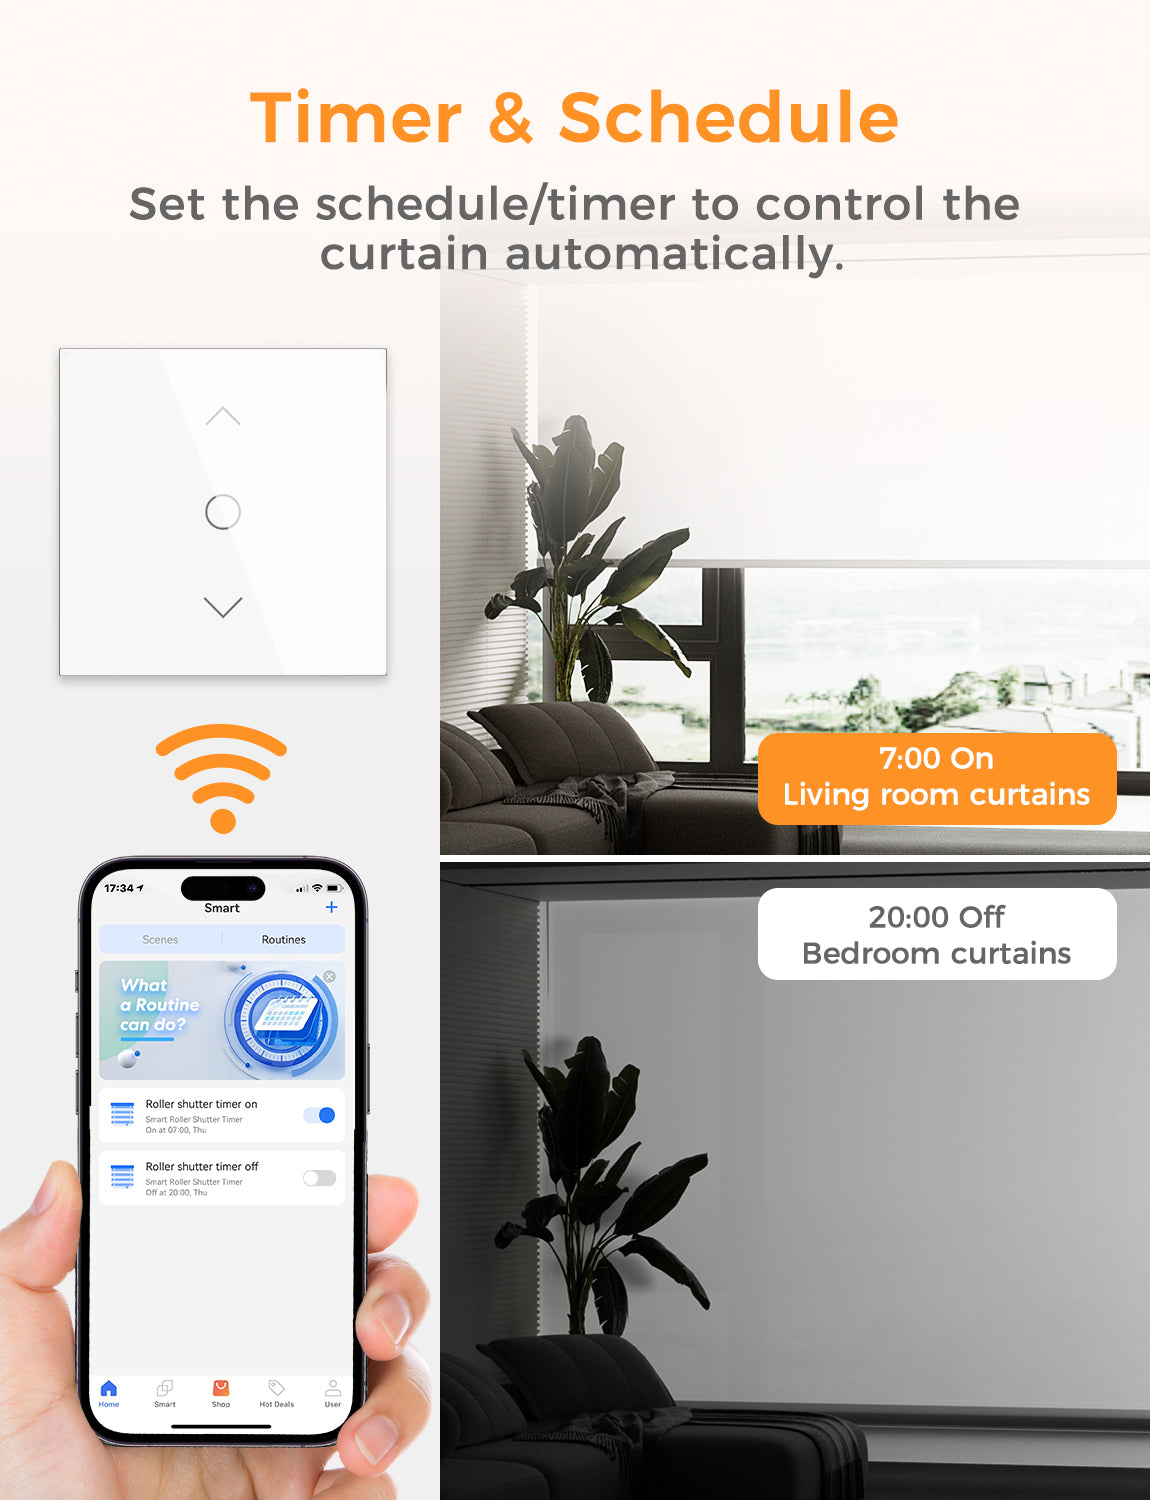 Refoss Smart Wi-Fi Roller Shutter Timer, RRS100HK (EU Version)